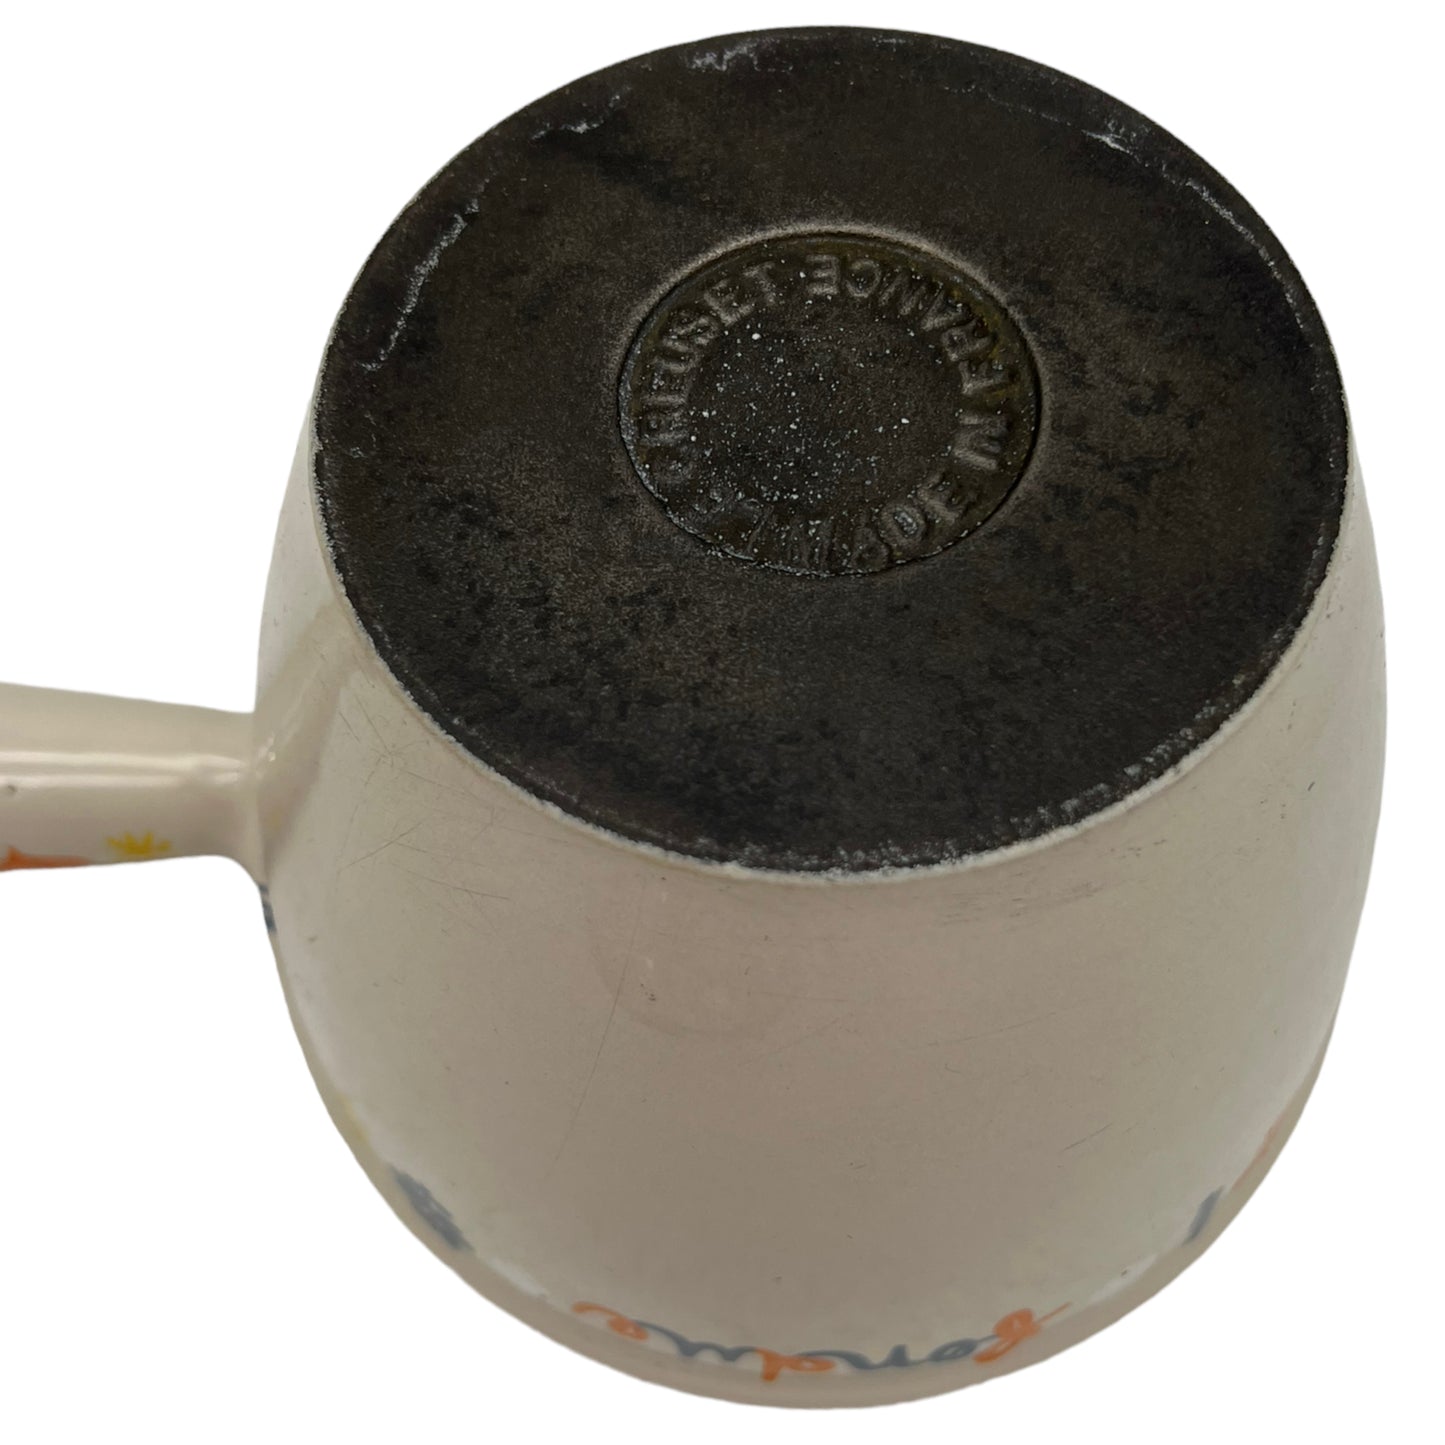 Vintage Le Creuset Cast Iron Saucepan with Lid, Le Creuset Fondue Pot (B79)